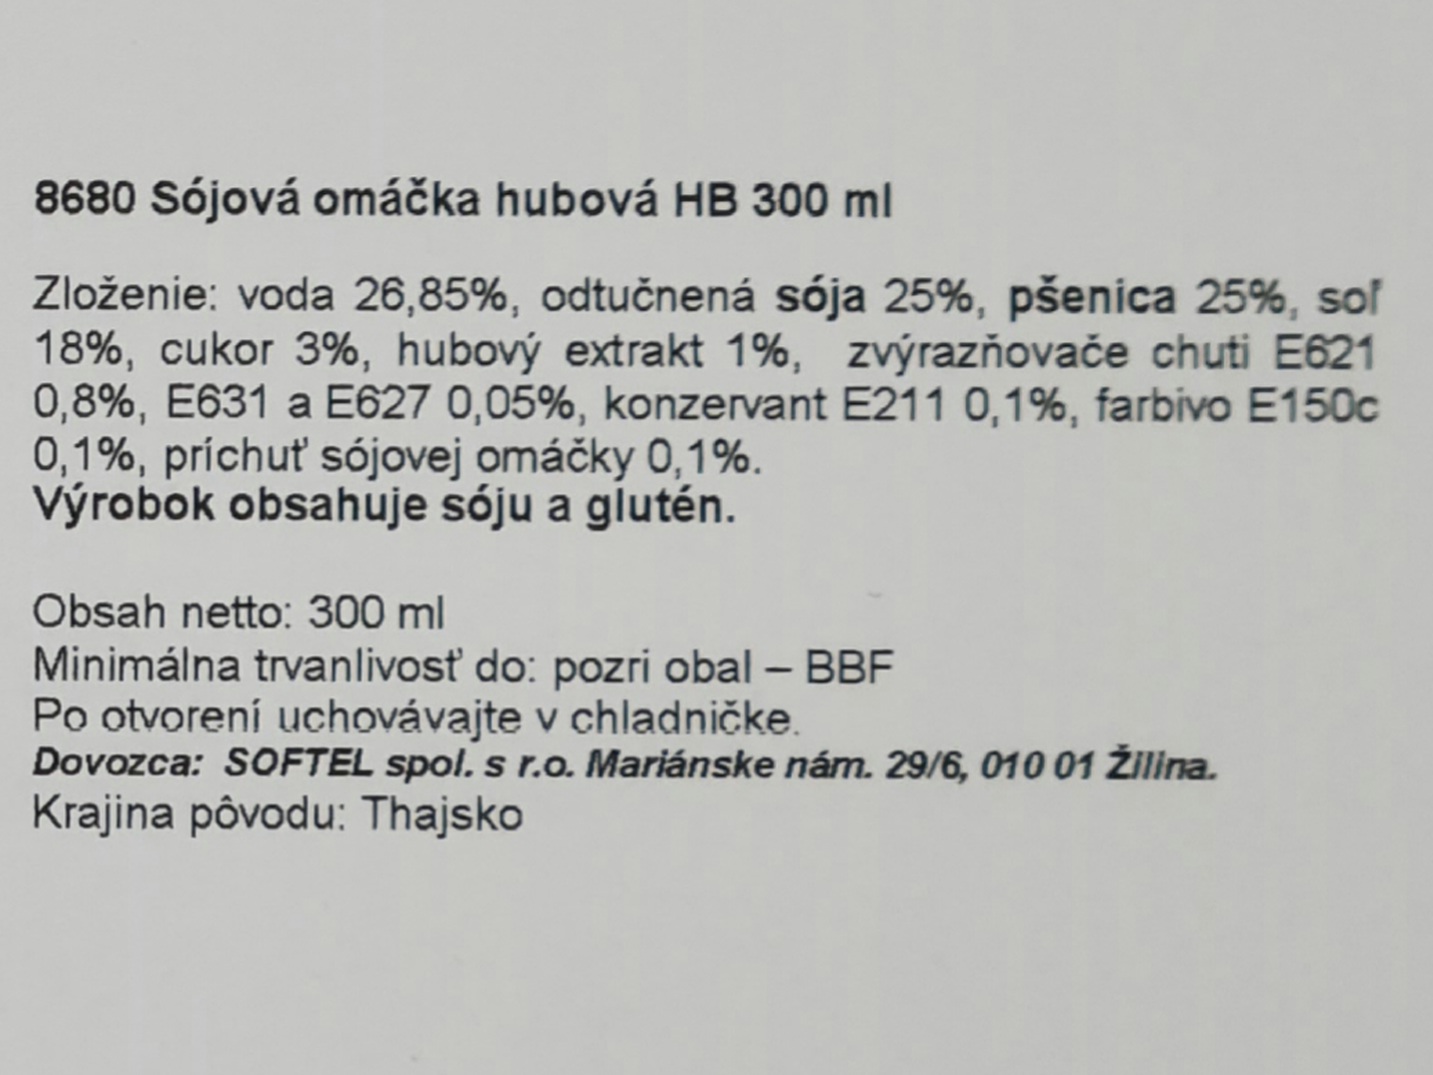 Hubová sójová omáčka HBB 300 ml